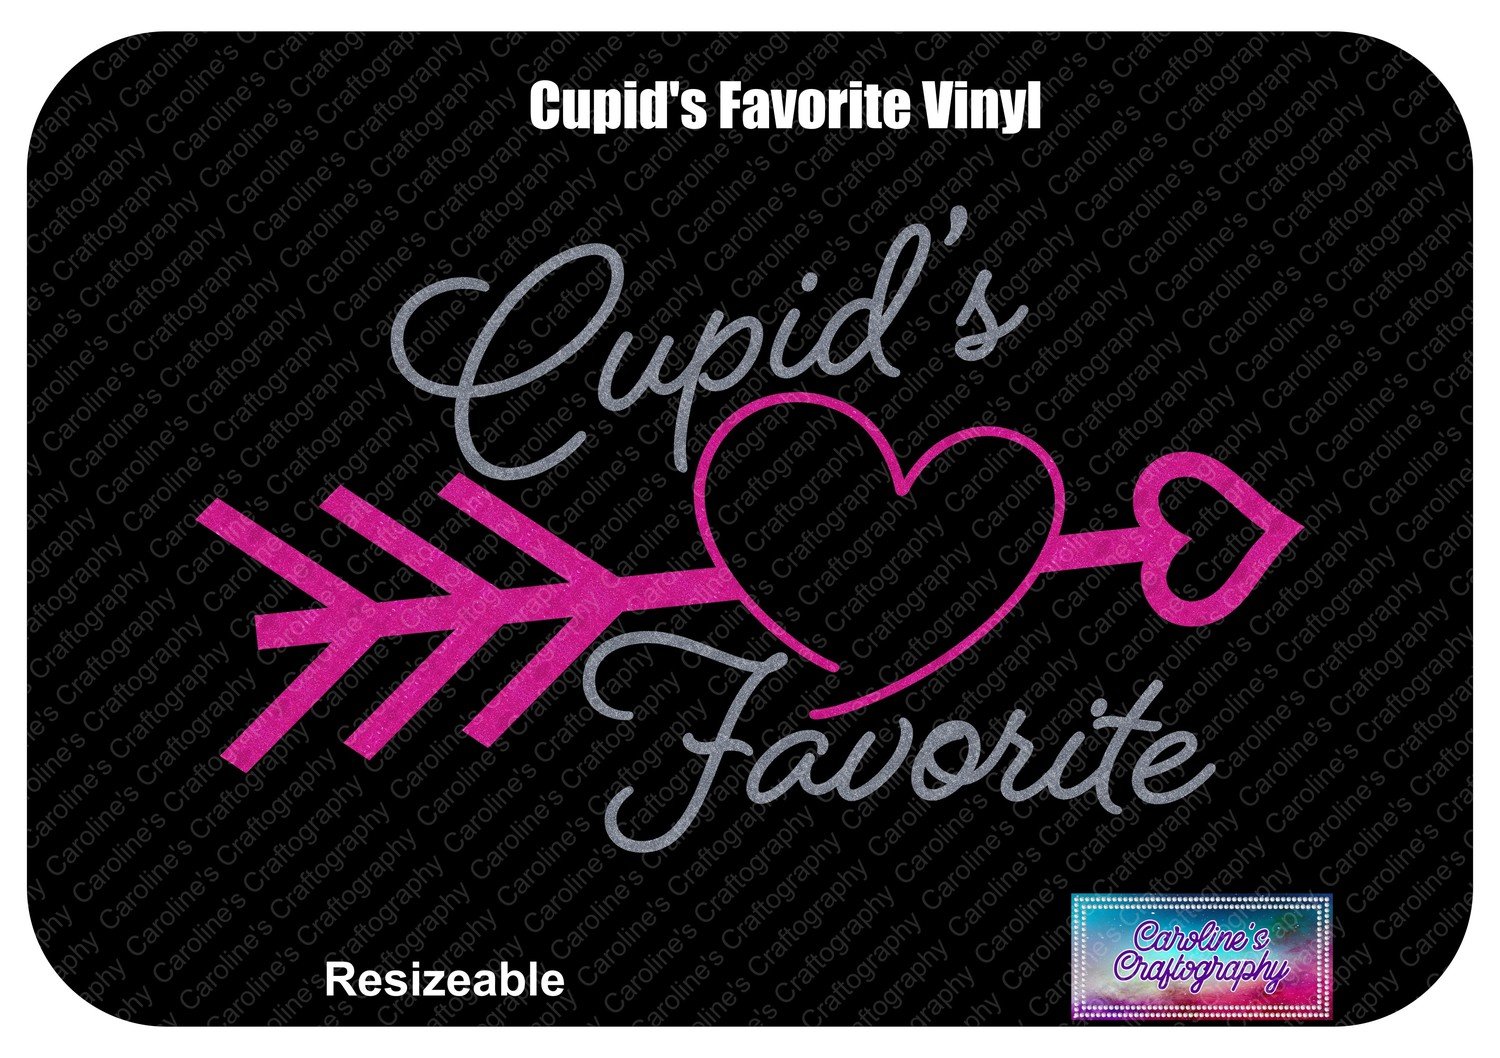 Cupid's Favorite Vinyl